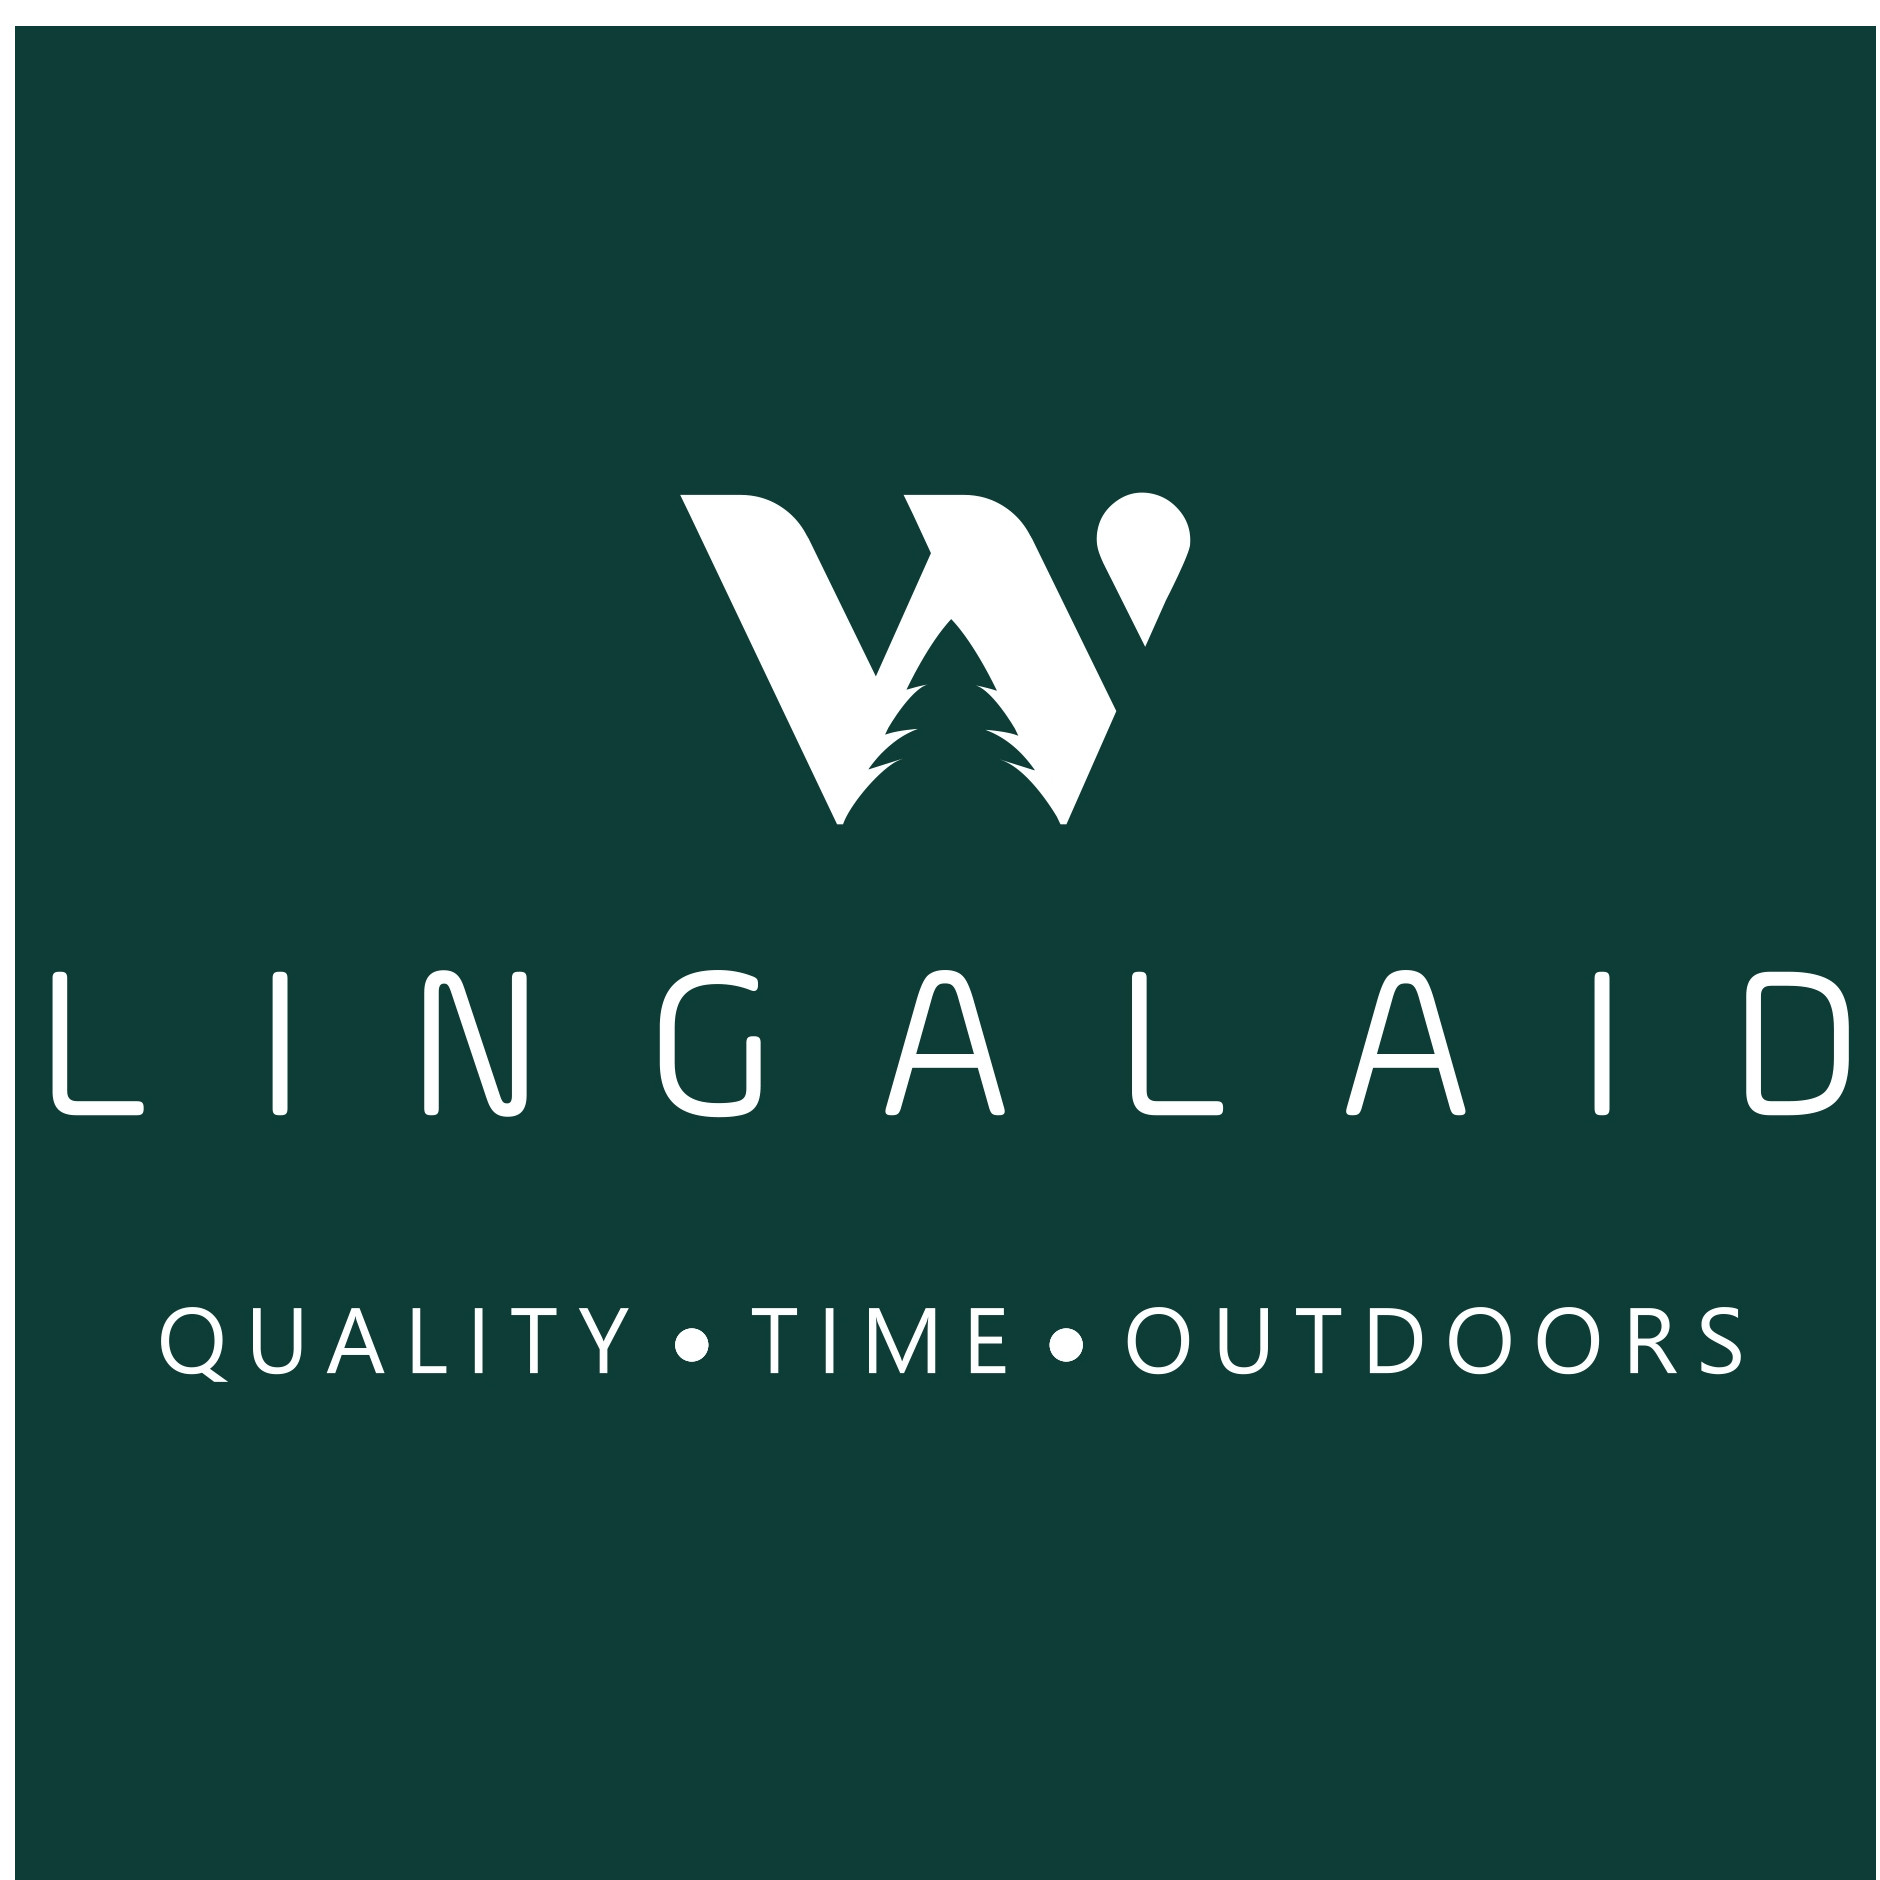 LINGALAID OÜ logo